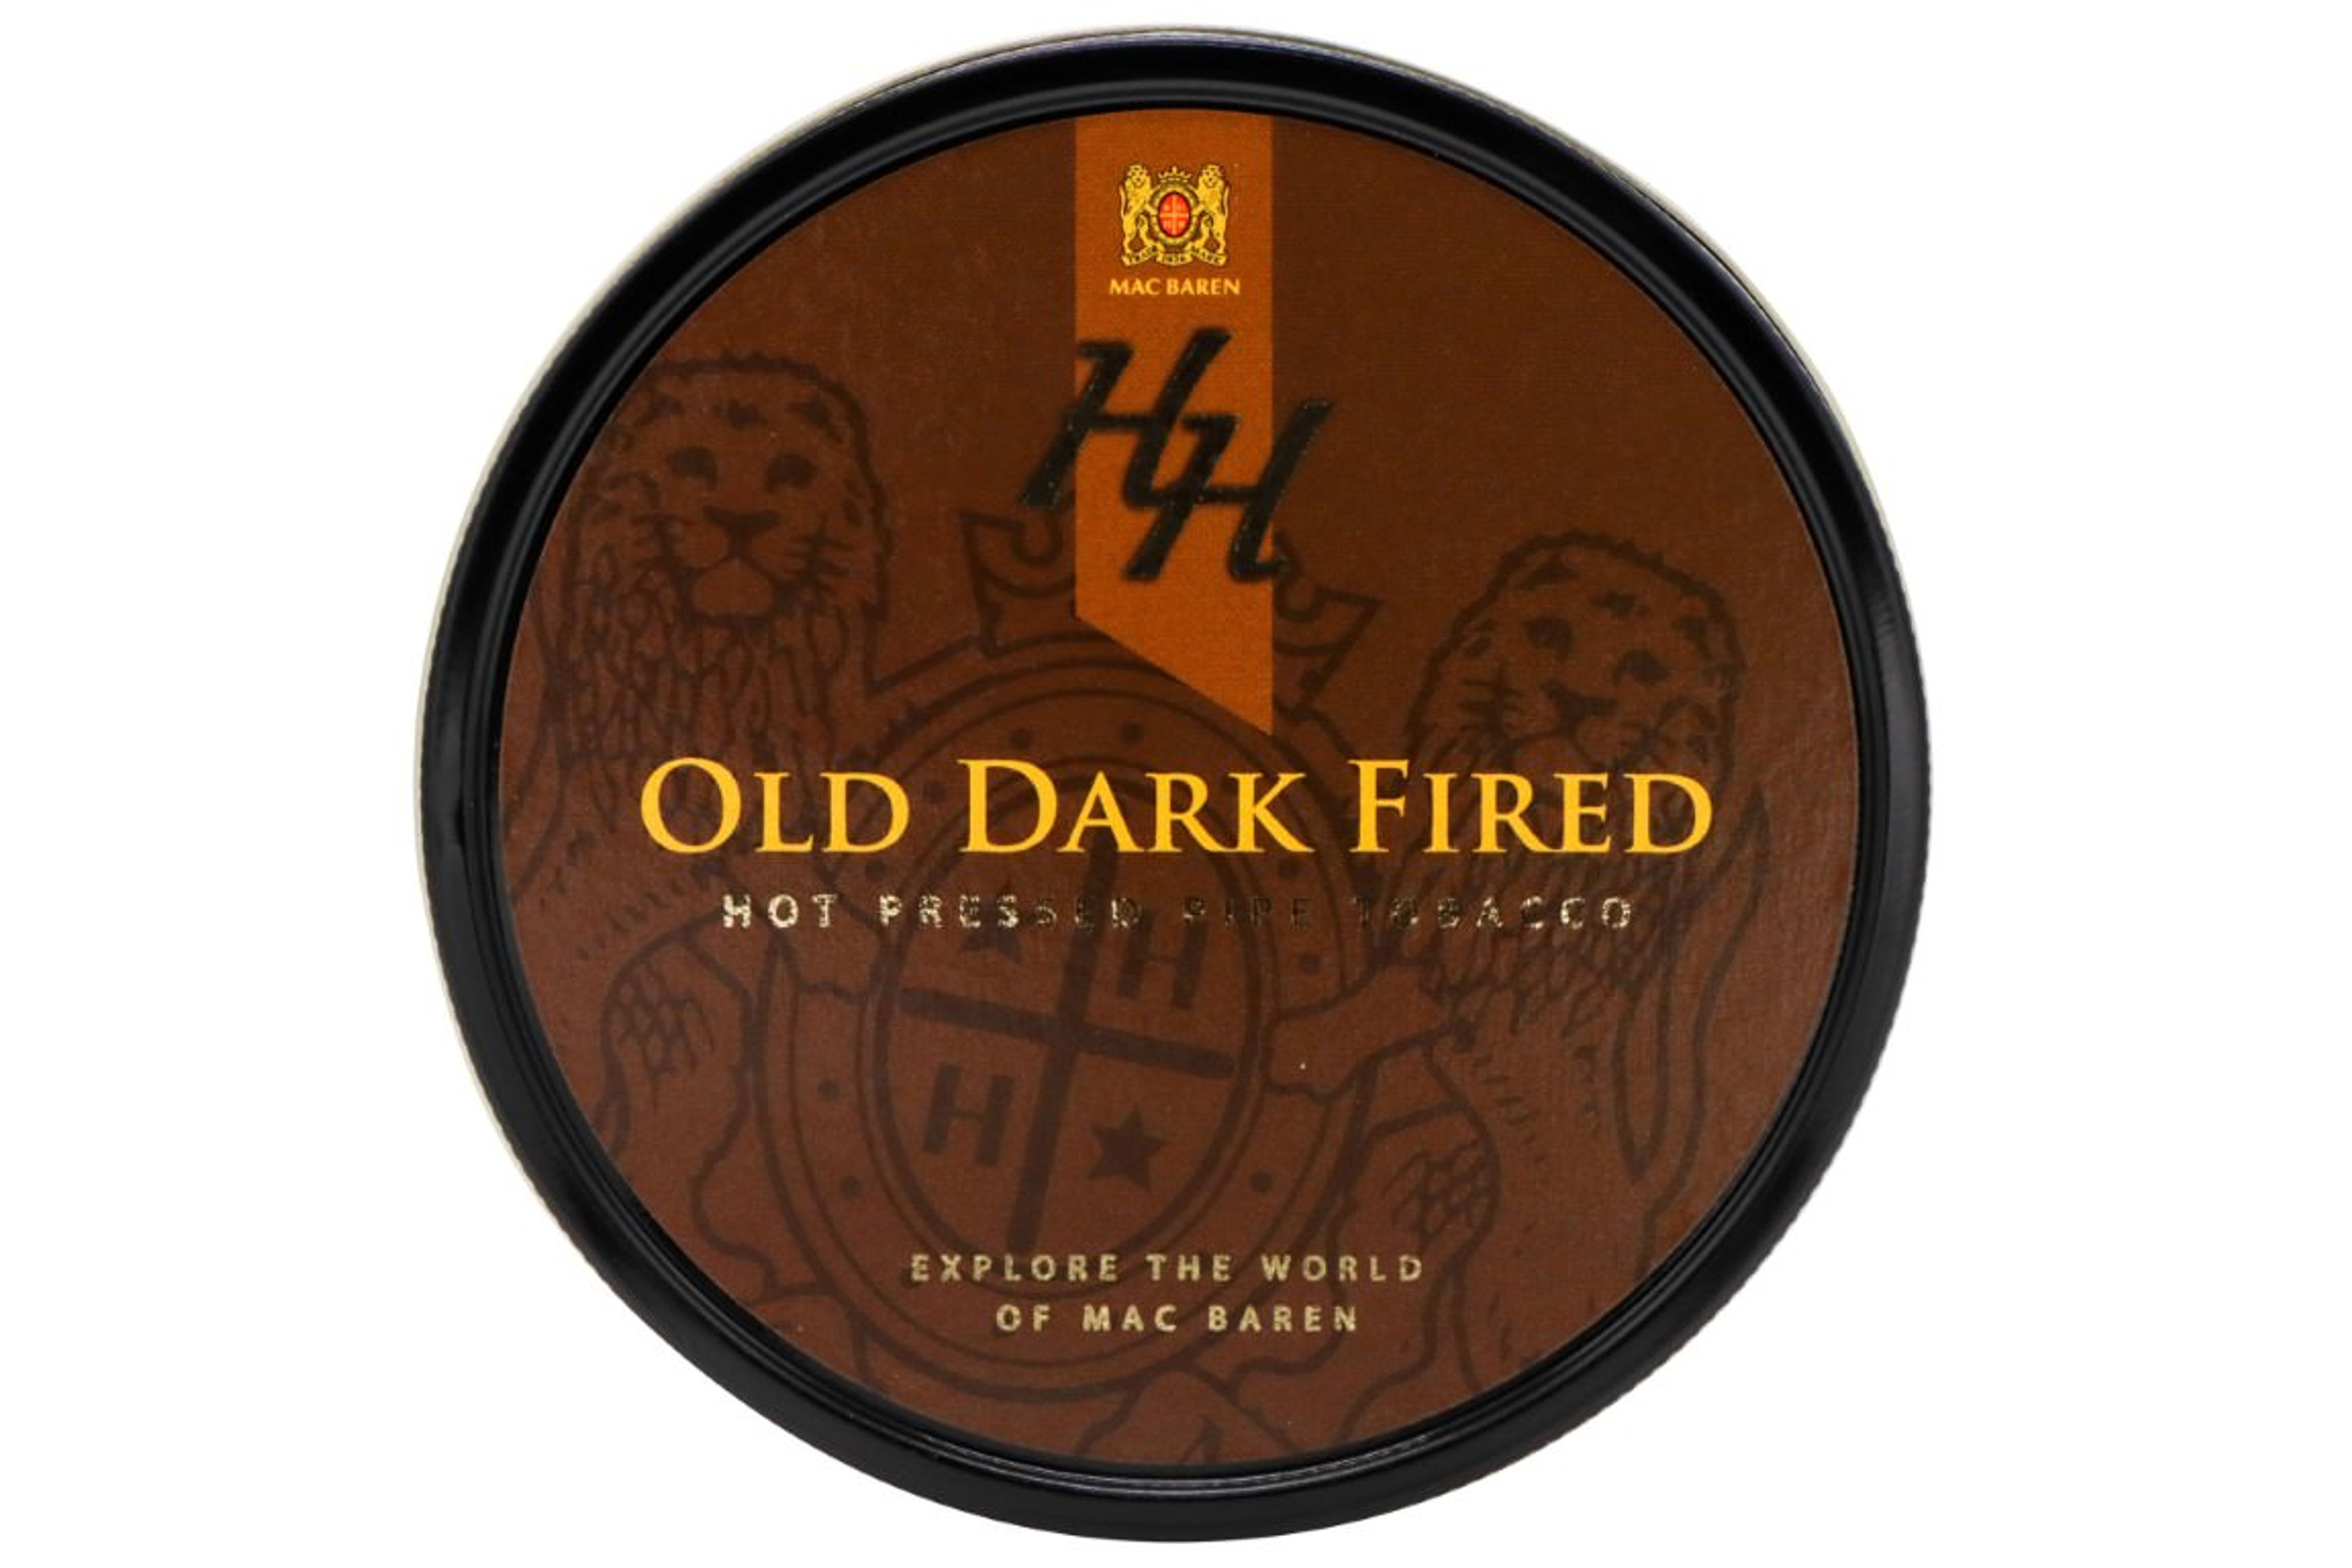 Mac Baren HH Old Dark Fired Pipe Tobacco - Hot Pressed